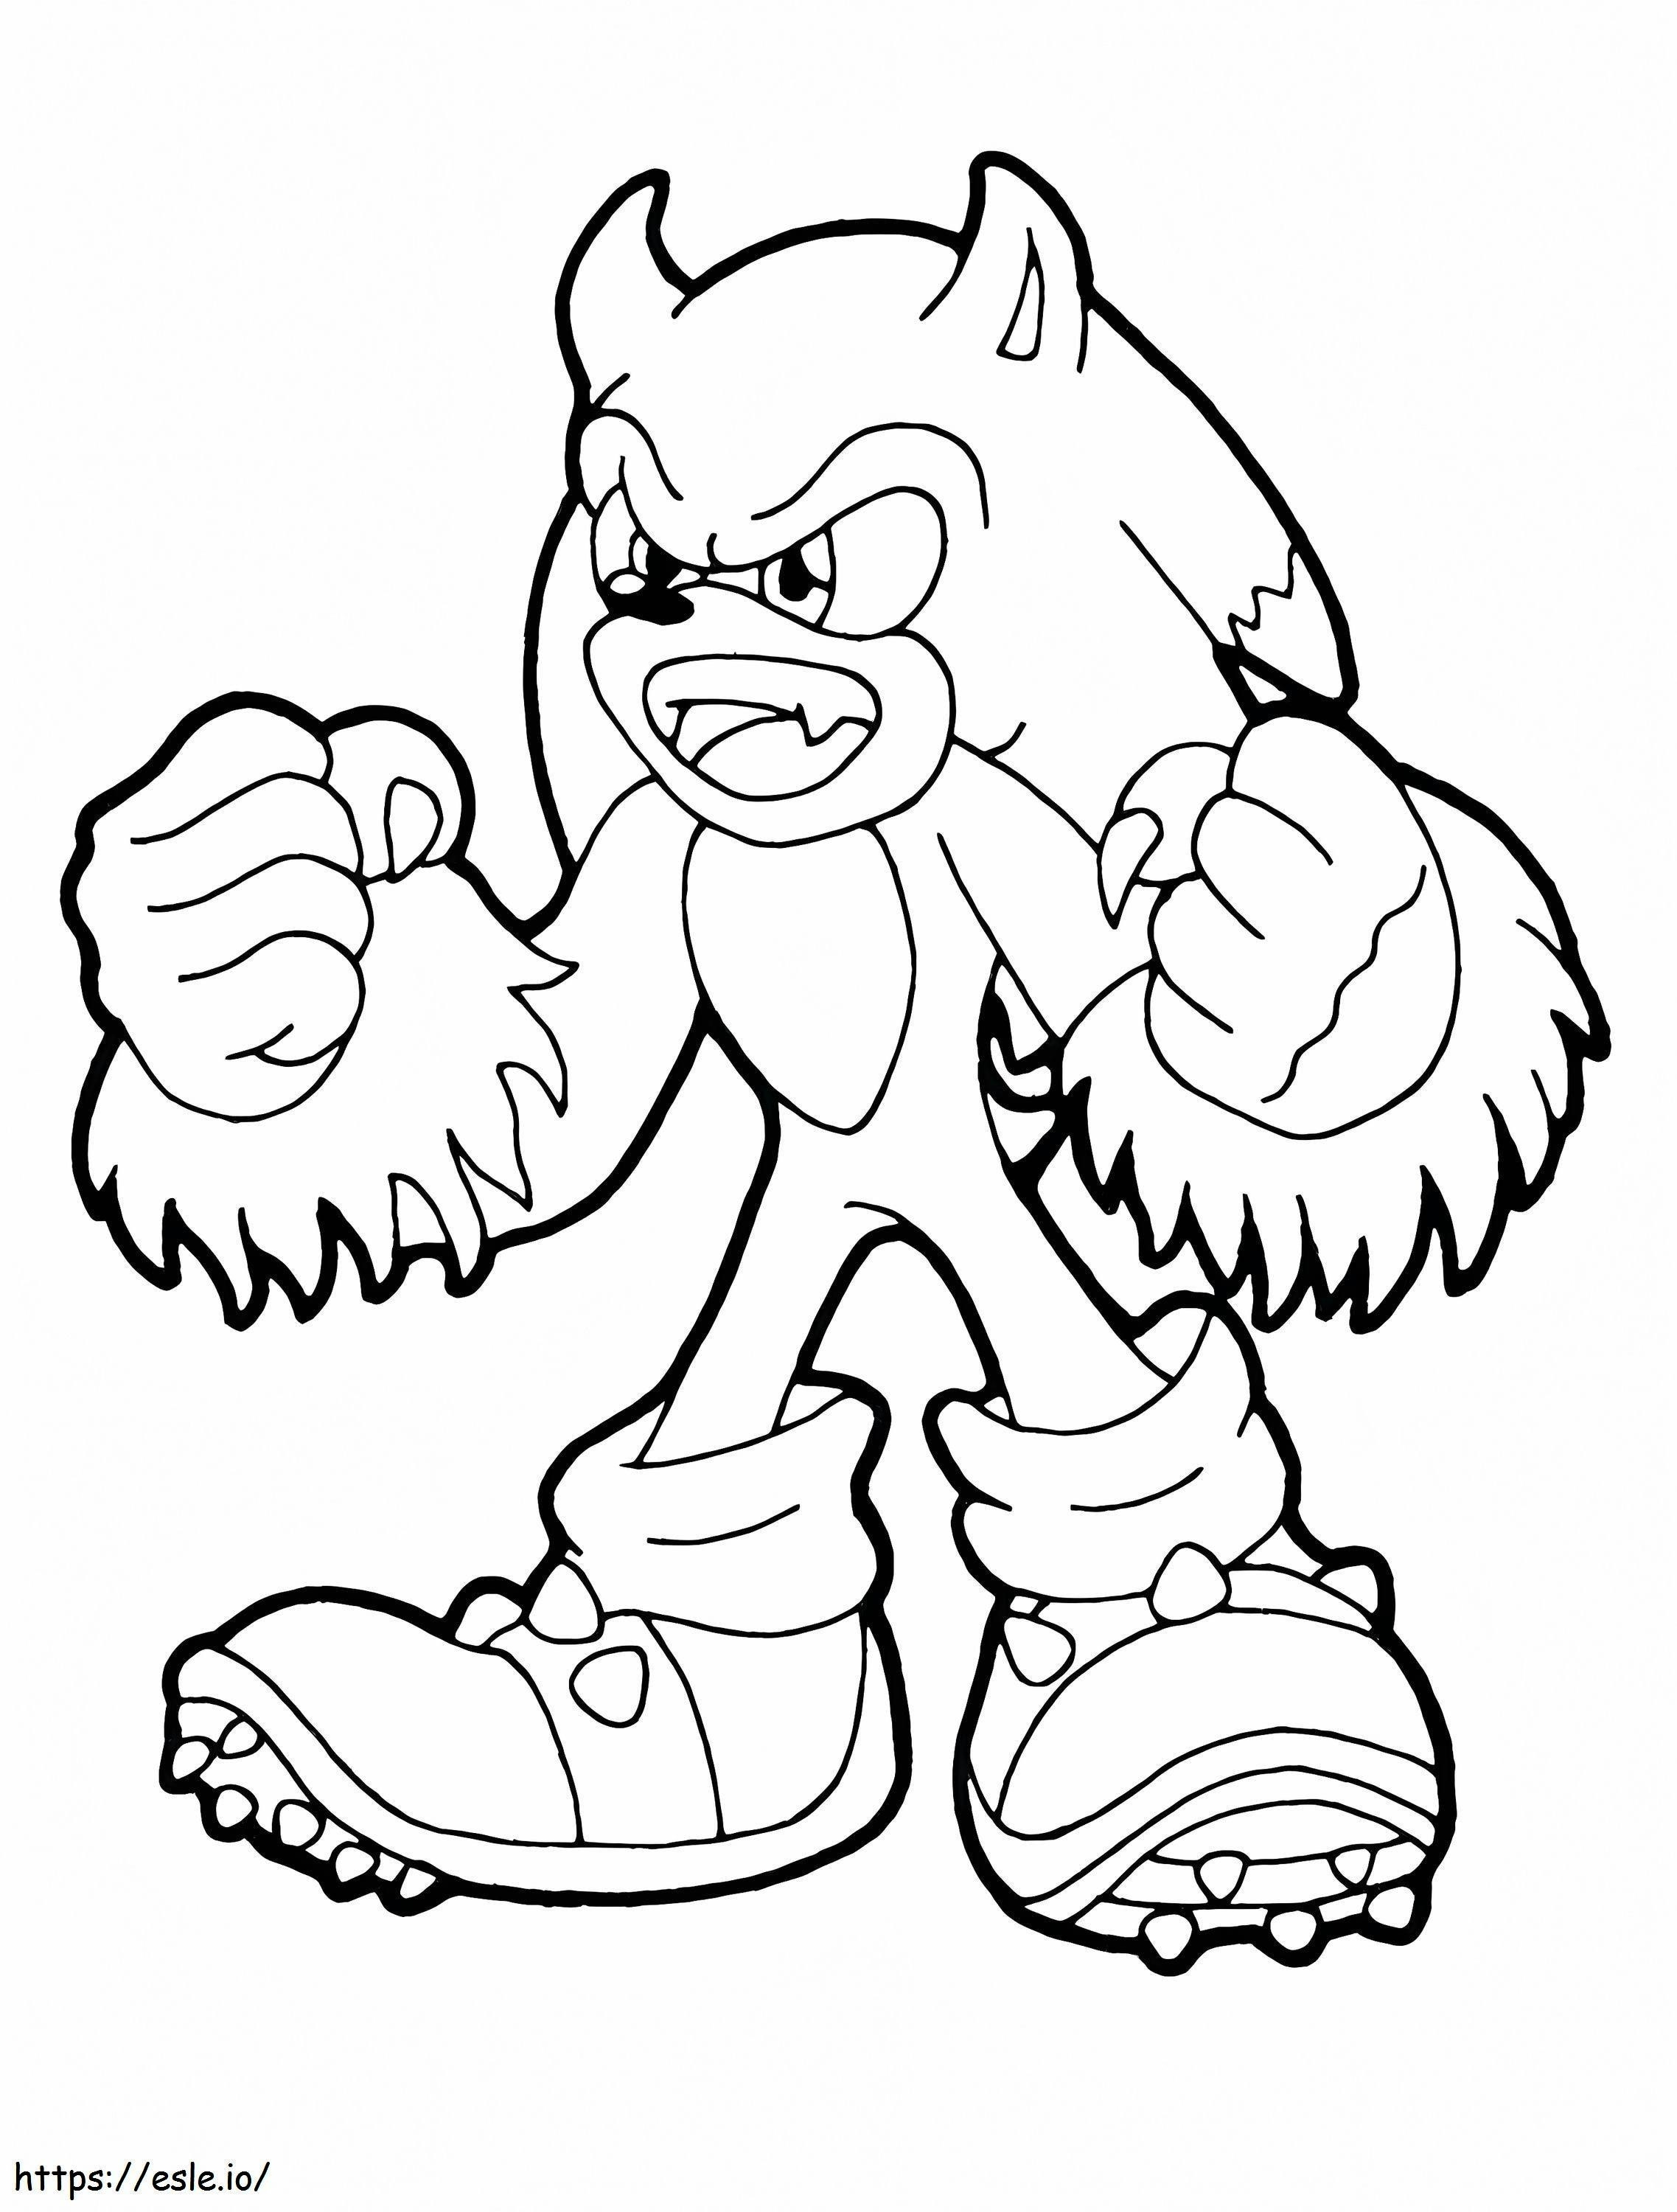 1573434490 Sonic Dapat Dicetak Buku-buku Jari Sonic Sonic Boom Sonic The Hedgehog Online Gambar Mewarnai